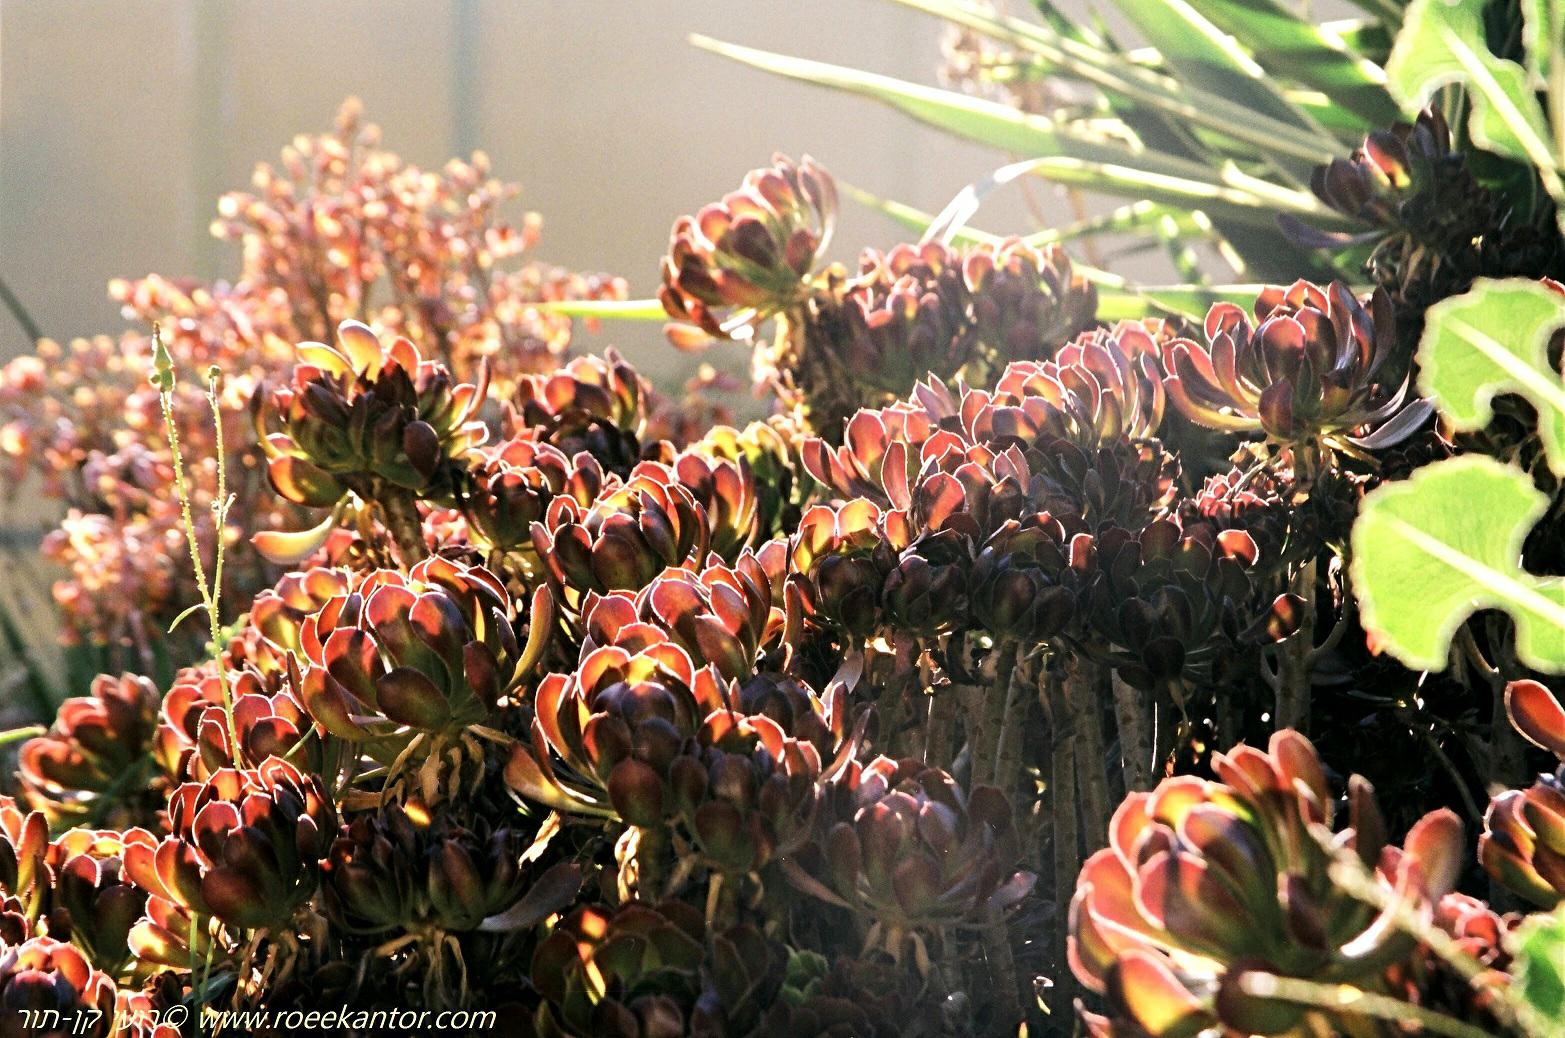 Aeonium arboreum var. holochrysum - Purple Crest Aeonium, Black Tree Aeonium, נצחה שיחית זן שחור-ארגמני, נצחה שיחית זן שחור-ארגמני